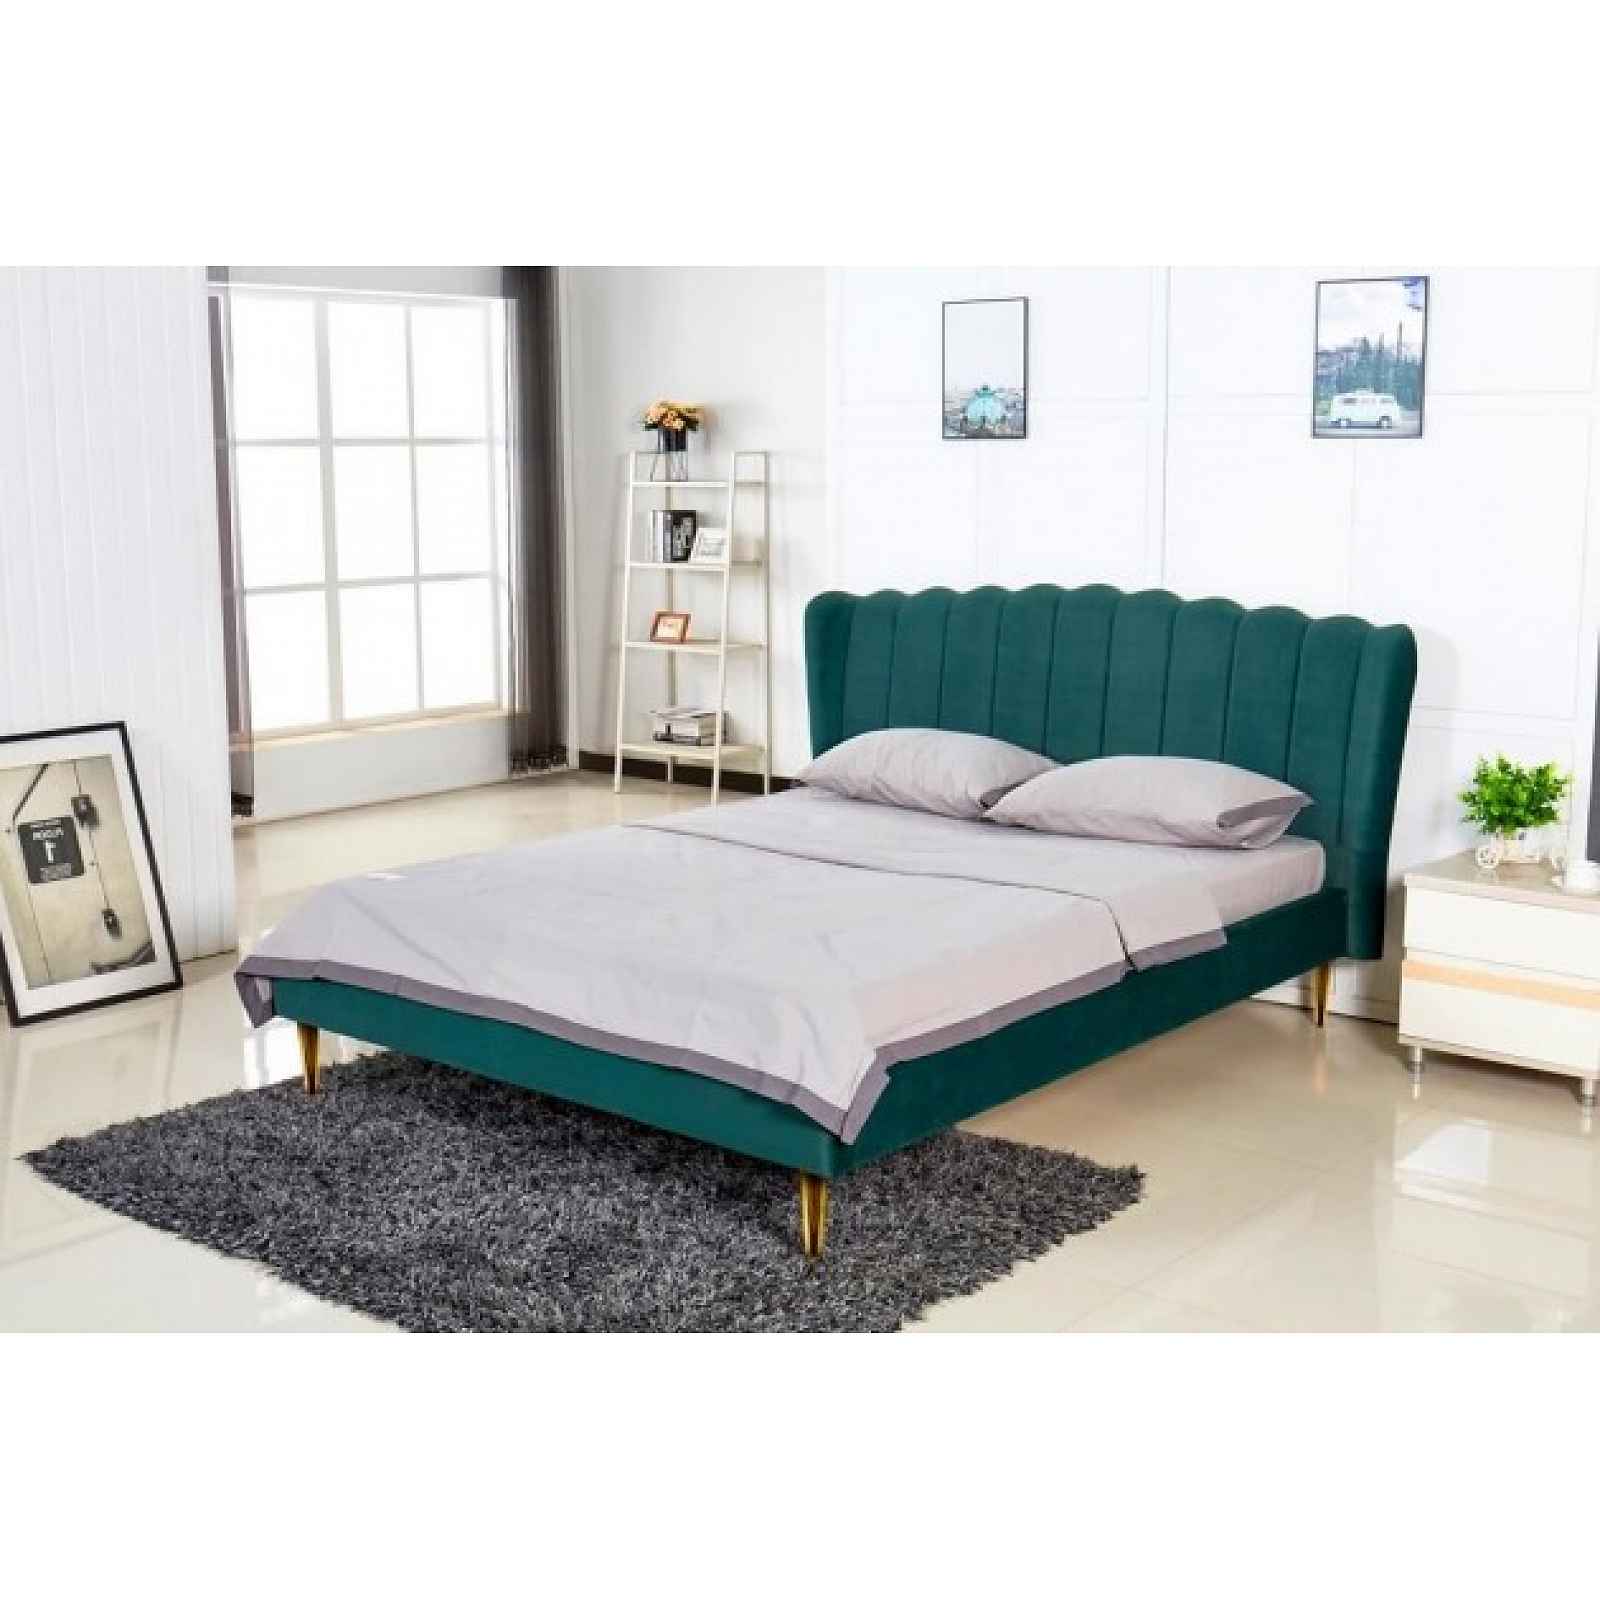 Čalouněná postel Florence 160x200, zelená, včetně roštu